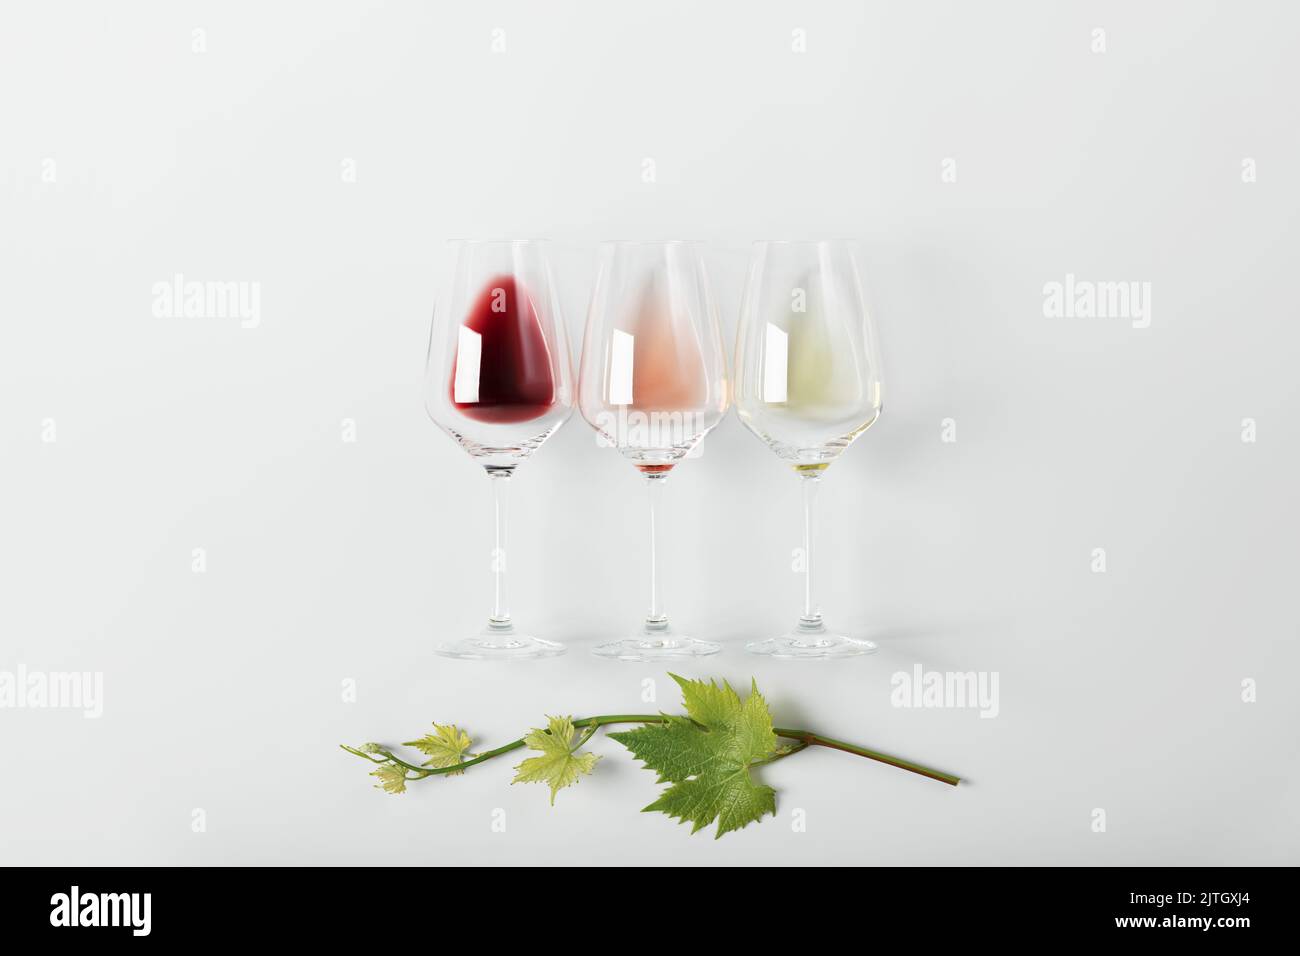 Piatto di vino rosso, rosa e bianco in bicchieri e ramificazione di foglie di vite su fondo bianco. Concetto di wine bar, cantina, degustazione di vini. Minimalisti Foto Stock